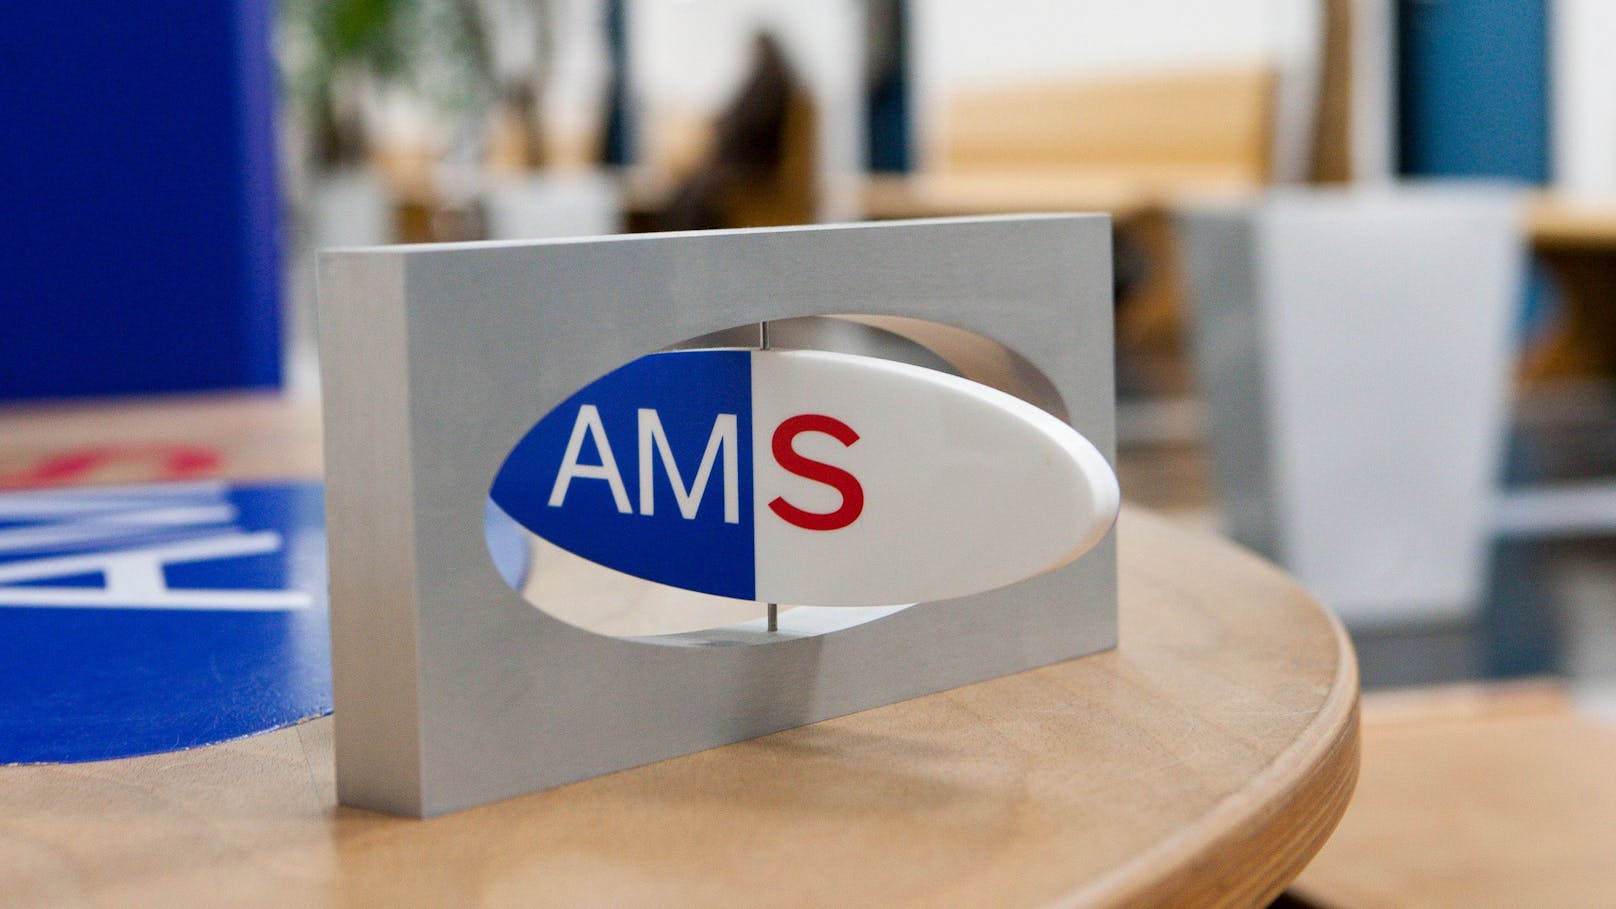 AMS stellt jetzt die Job-Vermittlung komplett um